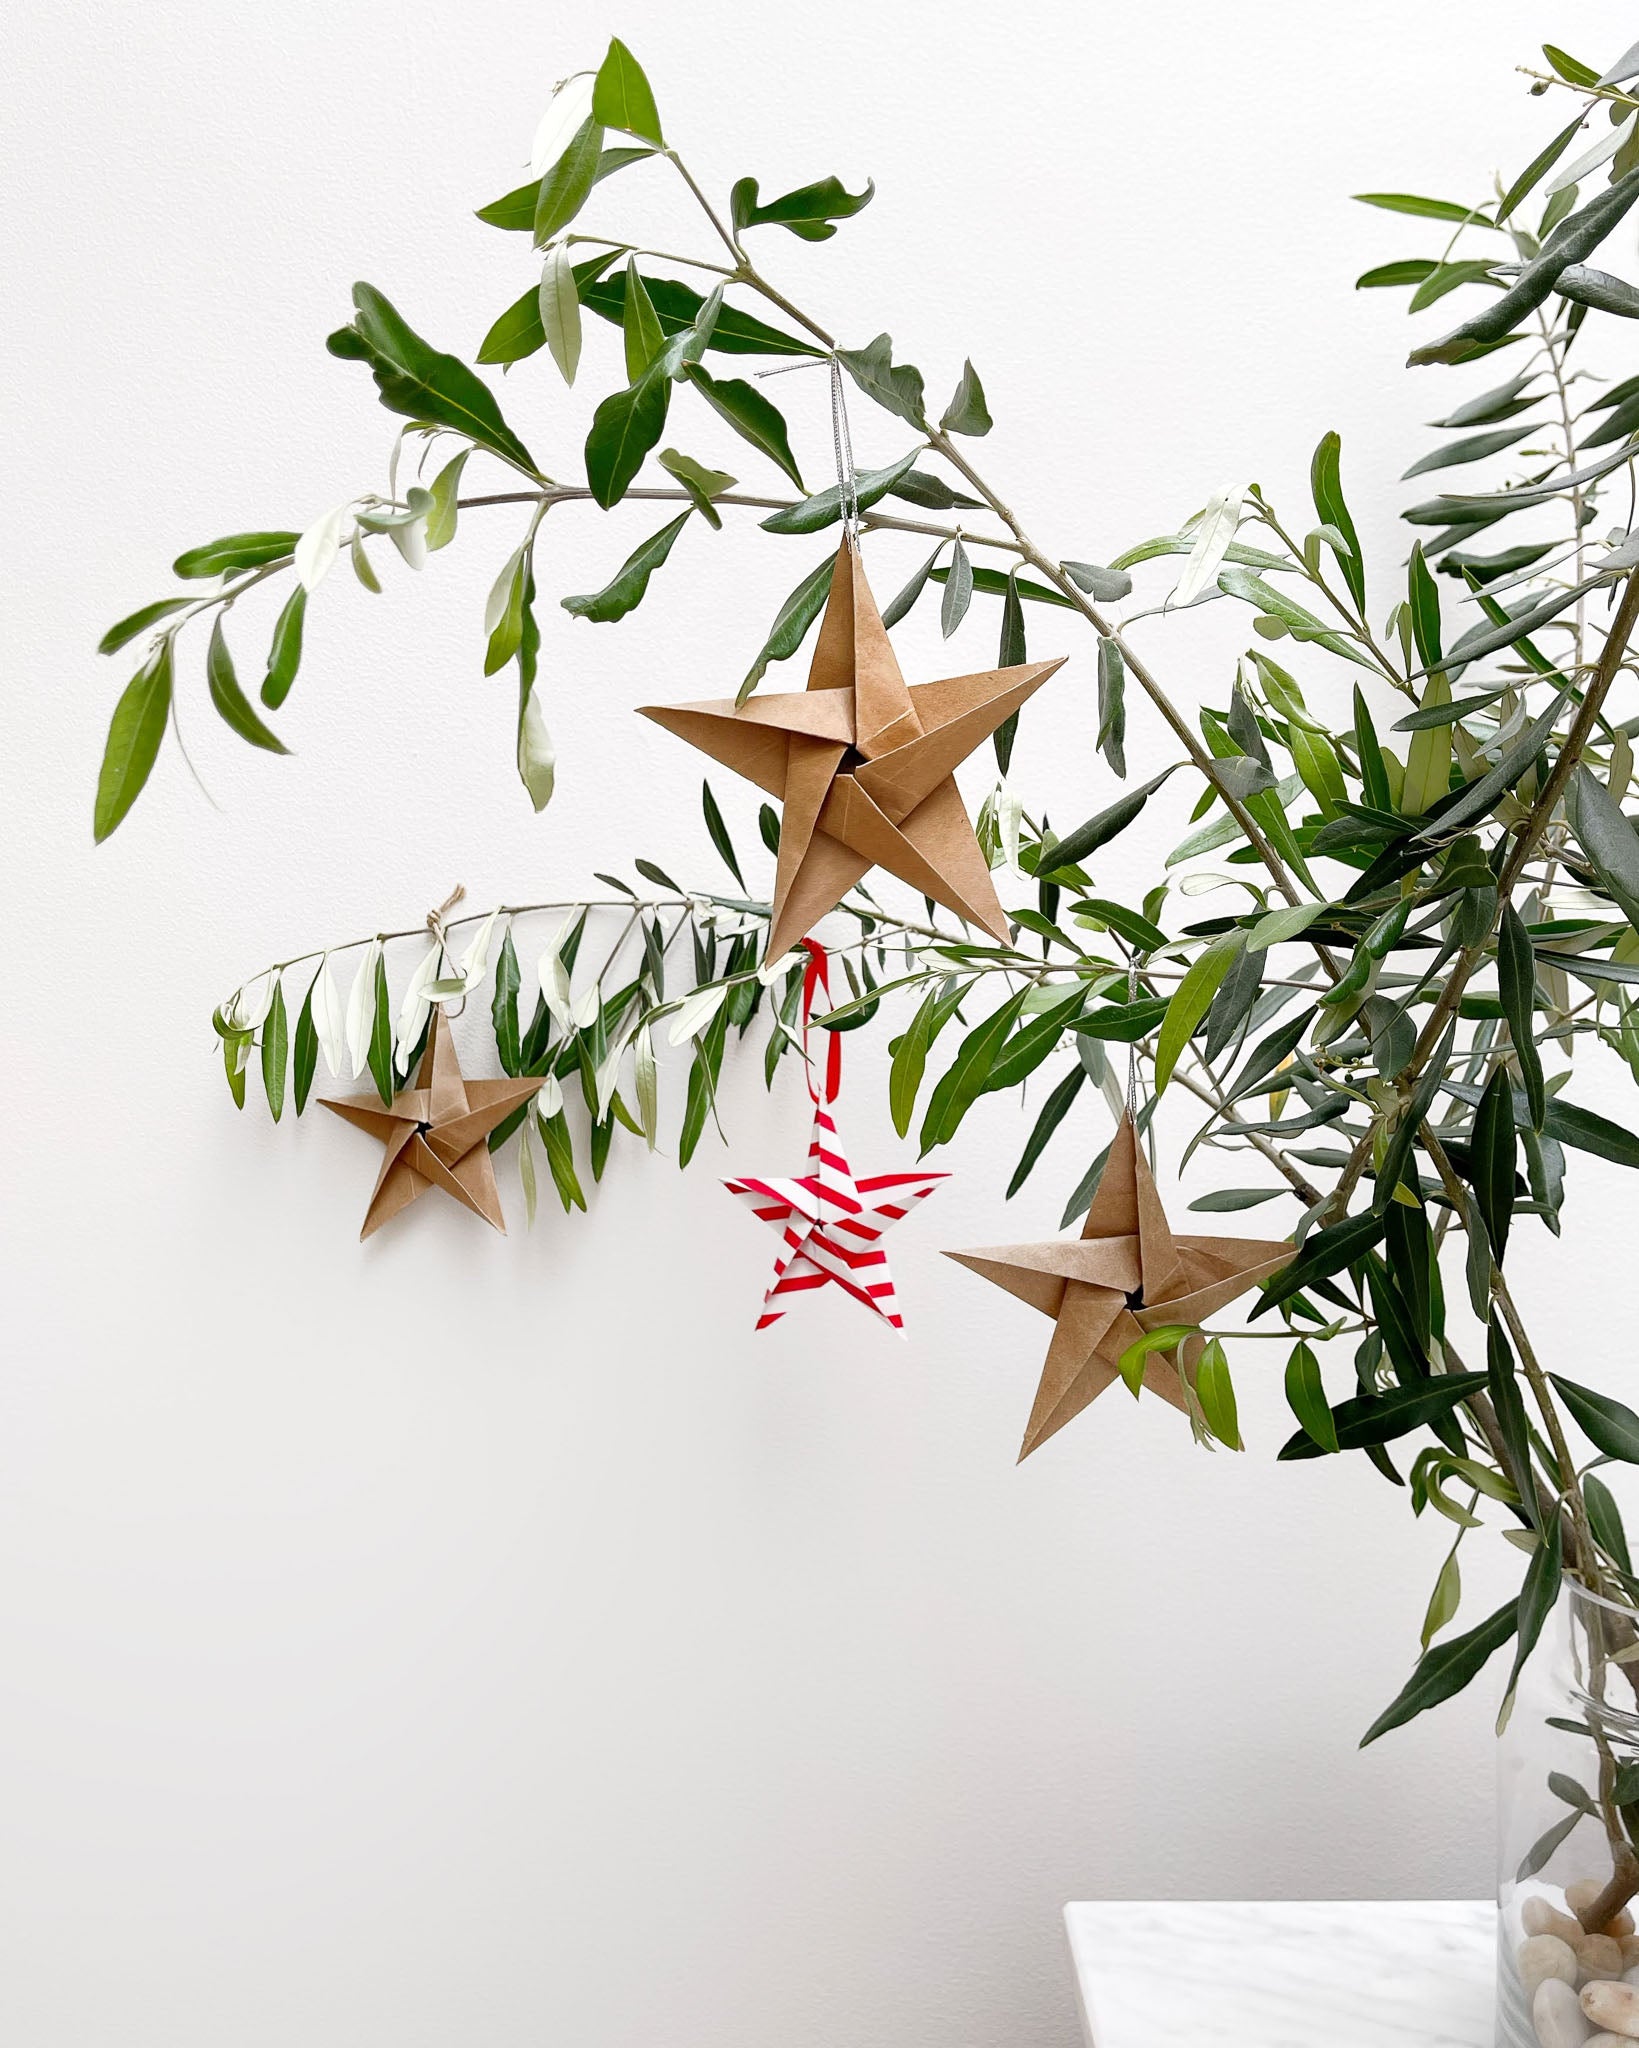 DIY origami stars for the Xmas tree